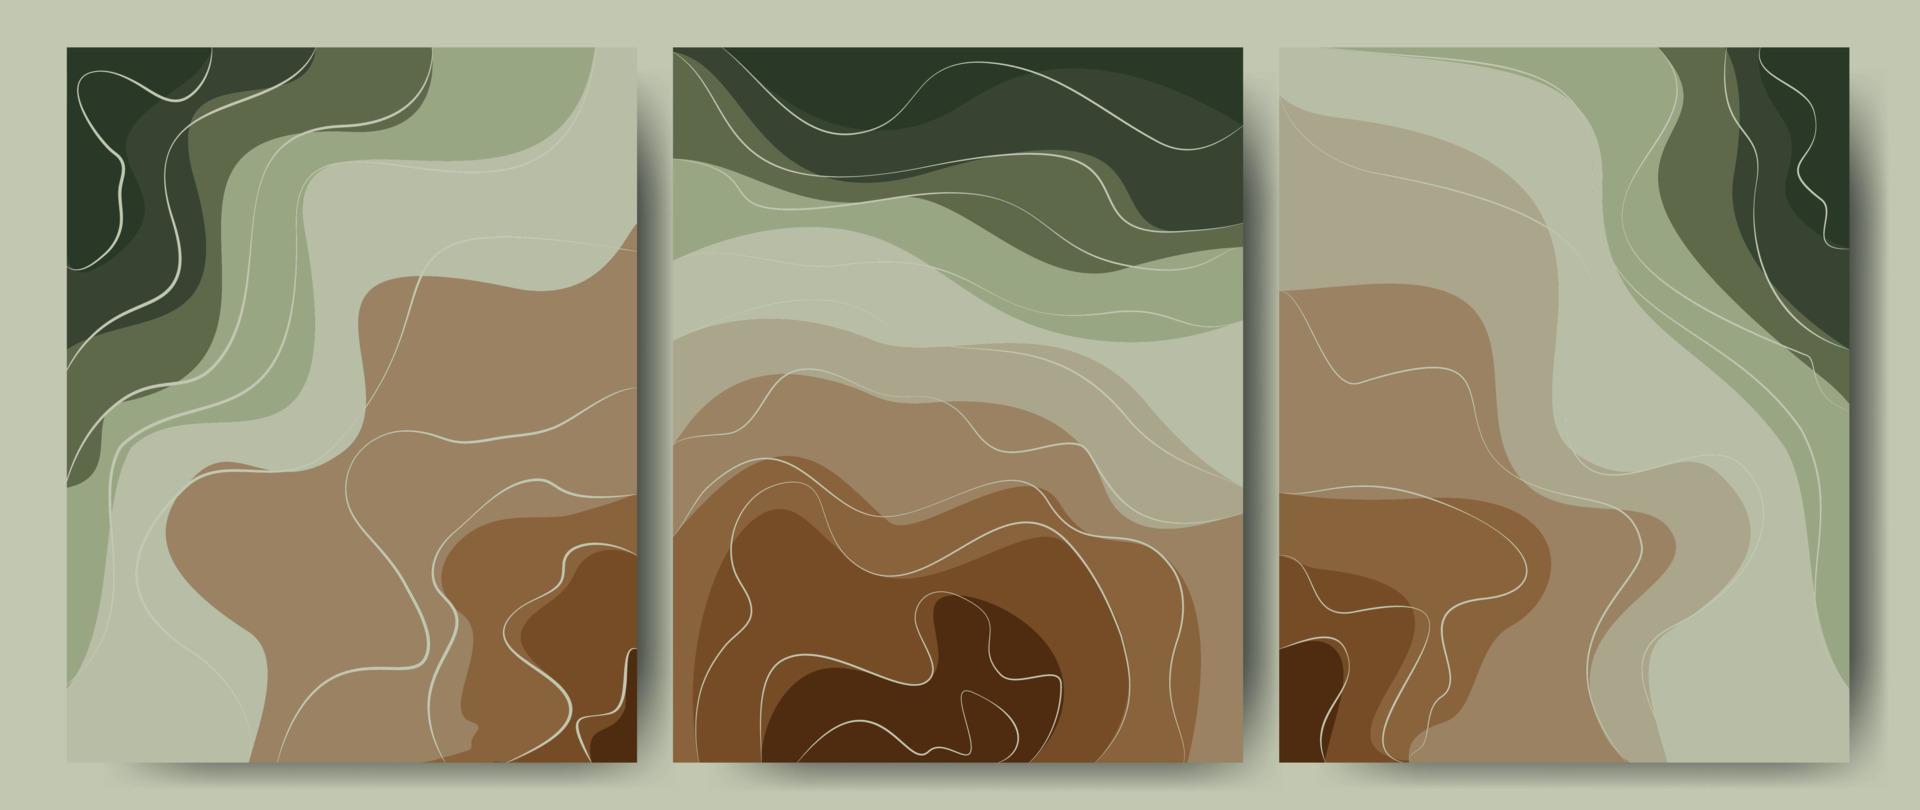 abstrakter hintergrund in grün-braunen farben, wald, erde. Texturvorlagenwald mit einem Muster aus Wellenlinien. ideal für Abdeckungen, Textildrucke, Tapeten. Vektor-Illustration. vektor